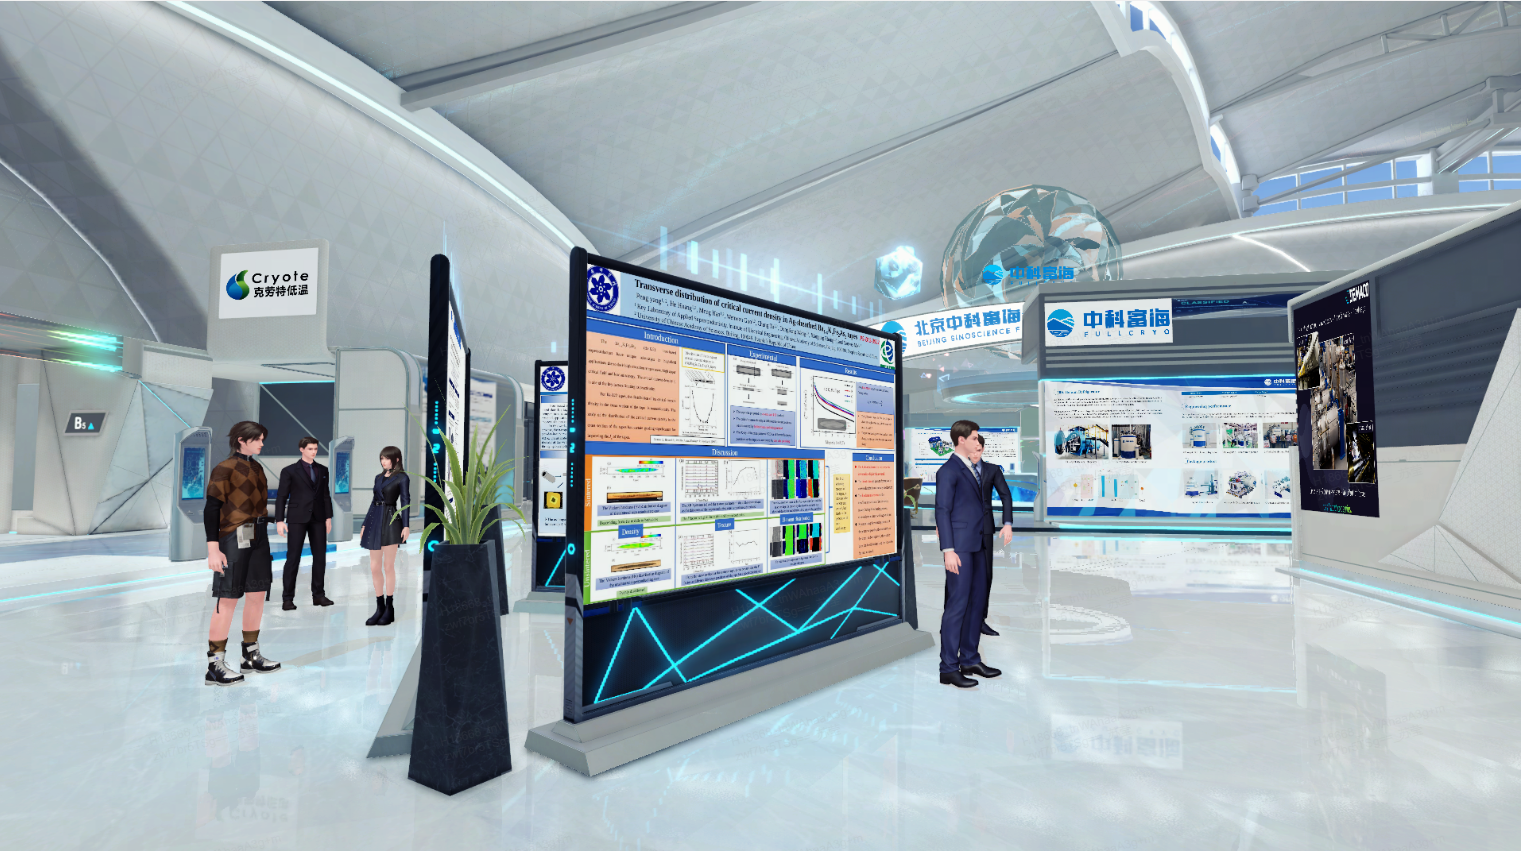 图片展示了一个现代化的展览厅内部，人们在观看展板，环境设计科技感强，装饰以蓝色光线为特色。